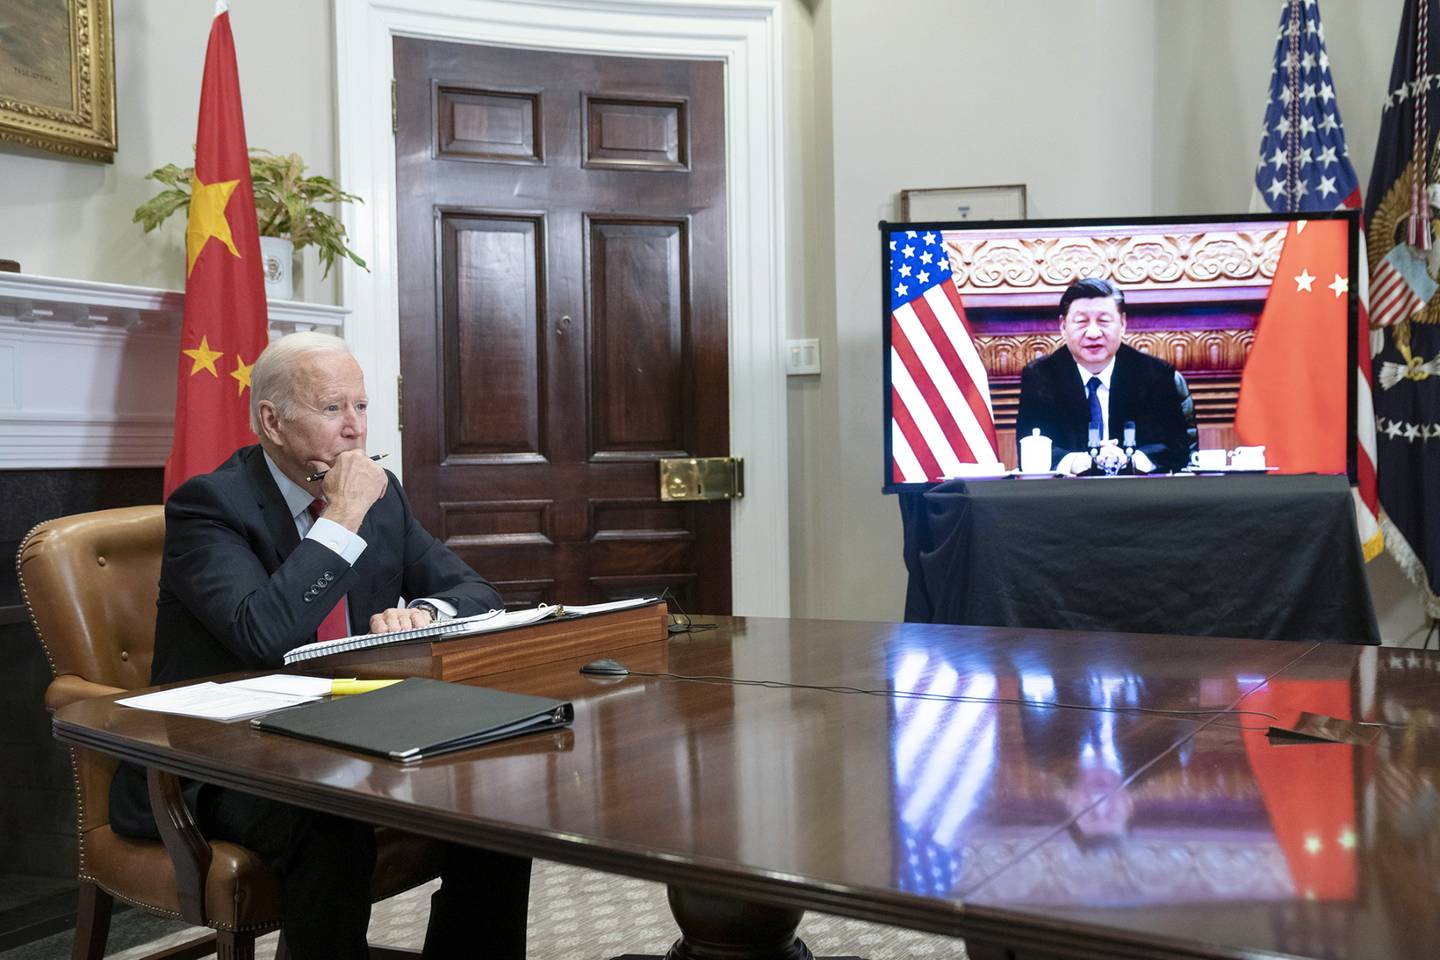 El presidente de EE.UU., Joe Biden, durante una reunión virtual con el presidente de China, Xi Jinping, en la Casa Blanca en noviembre.Fotógrafo: Sarah Silbiger / UPIdfd